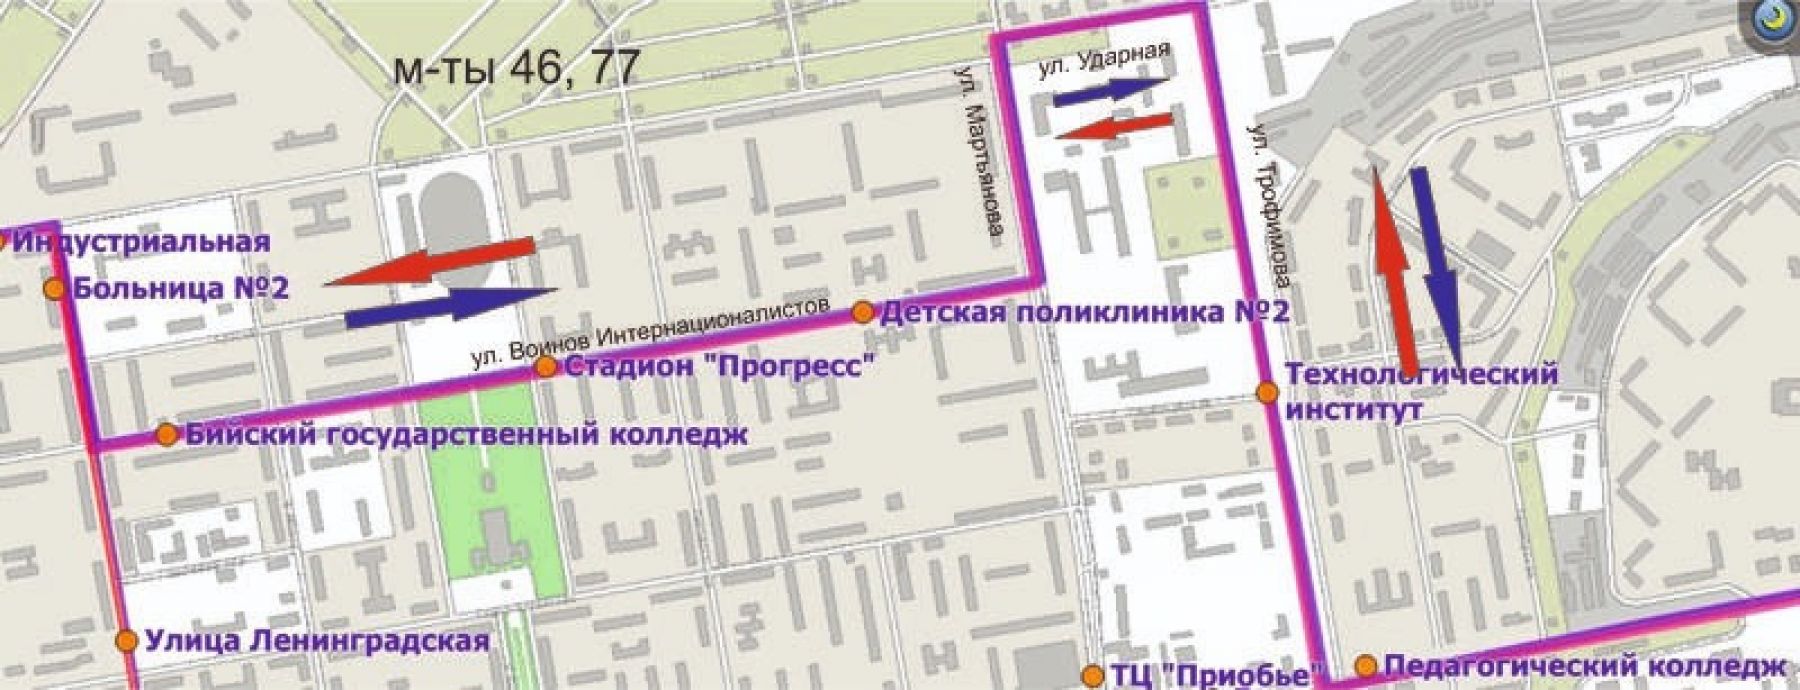 Схема движения маршрутов №46 и №77 с 22 мая